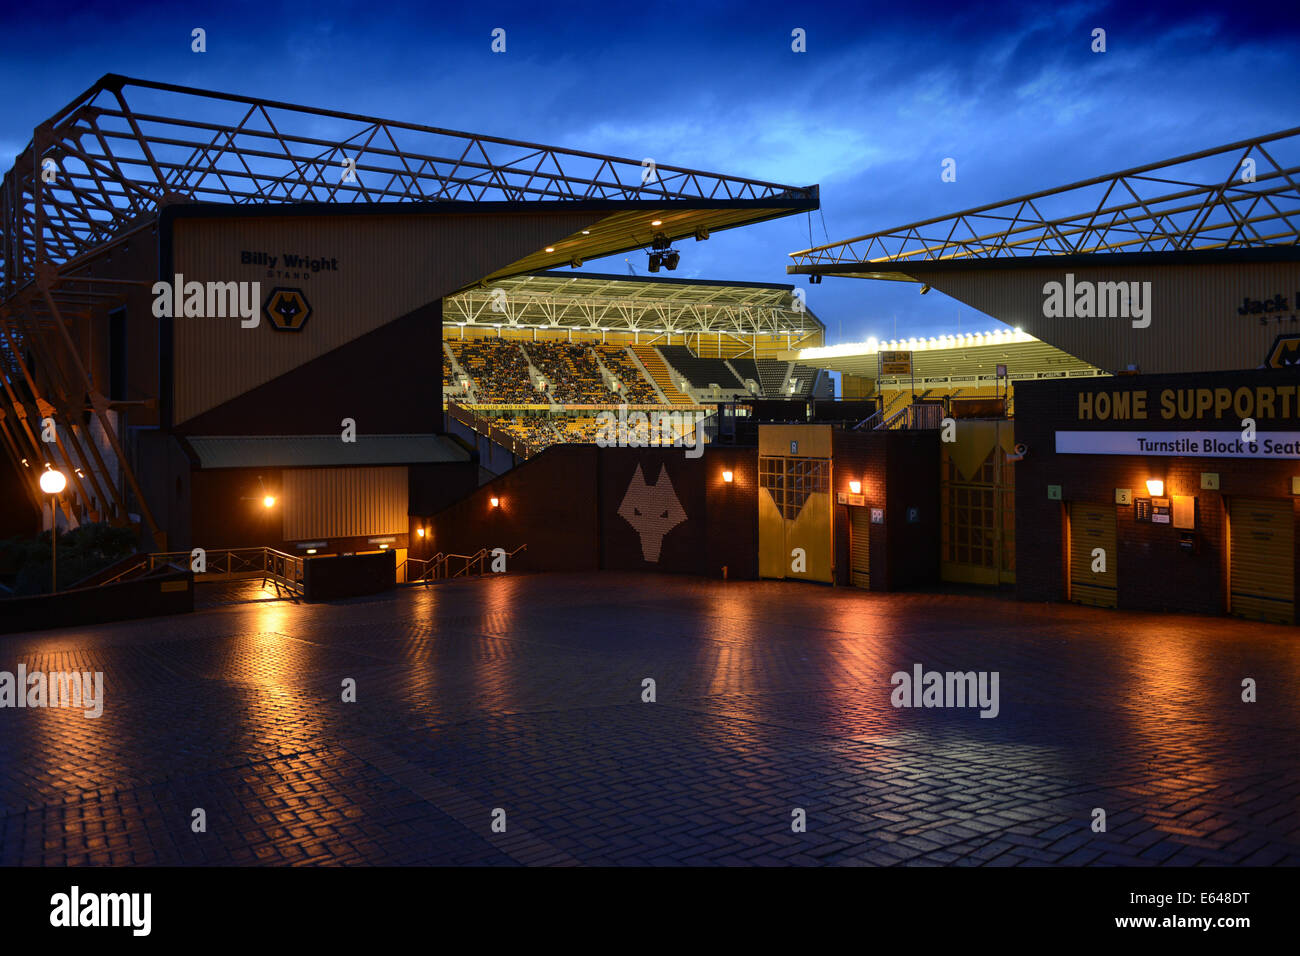 Estadio de fútbol Molineux de Wolverhampton Wanderers FC en casa durante la noche coinciden Foto de stock